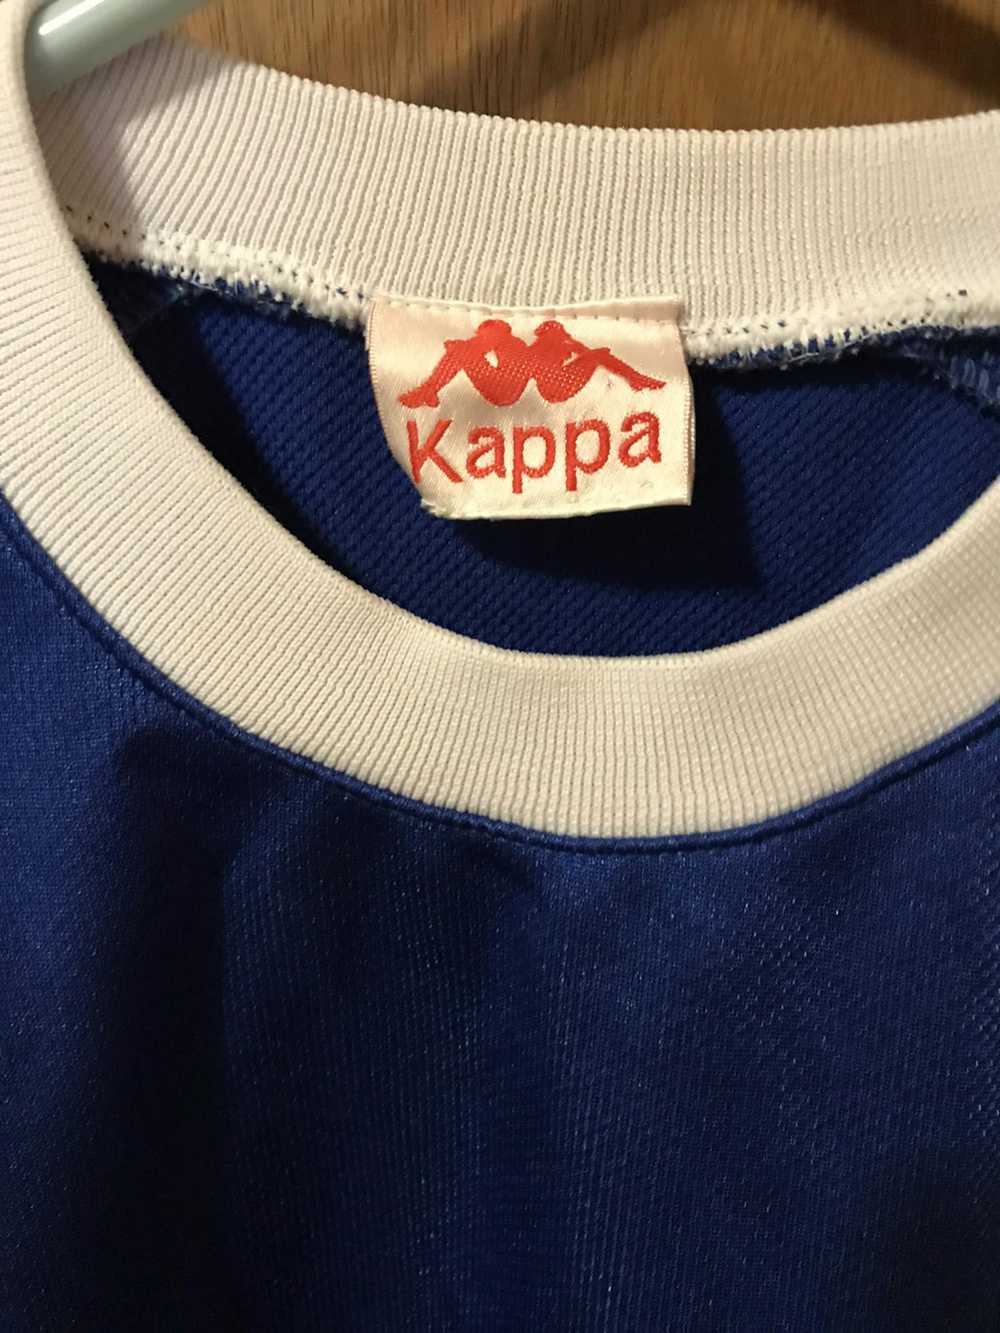 Kappa KAPPA JERSEY Big Logo sport shirt - image 4